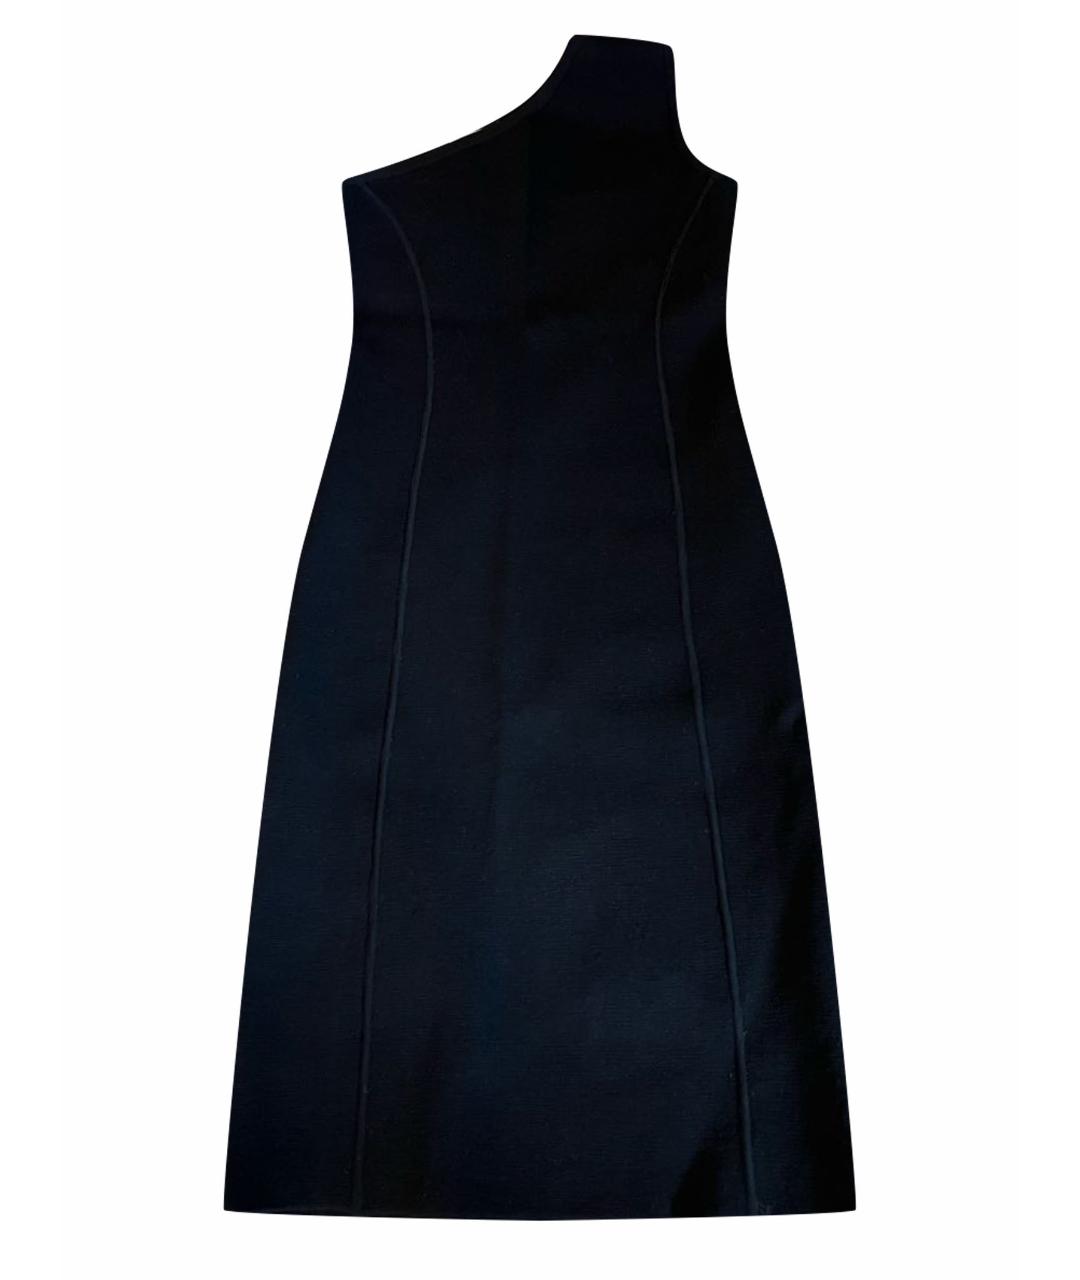 MICHAEL KORS Черное шерстяное коктейльное платье, фото 1